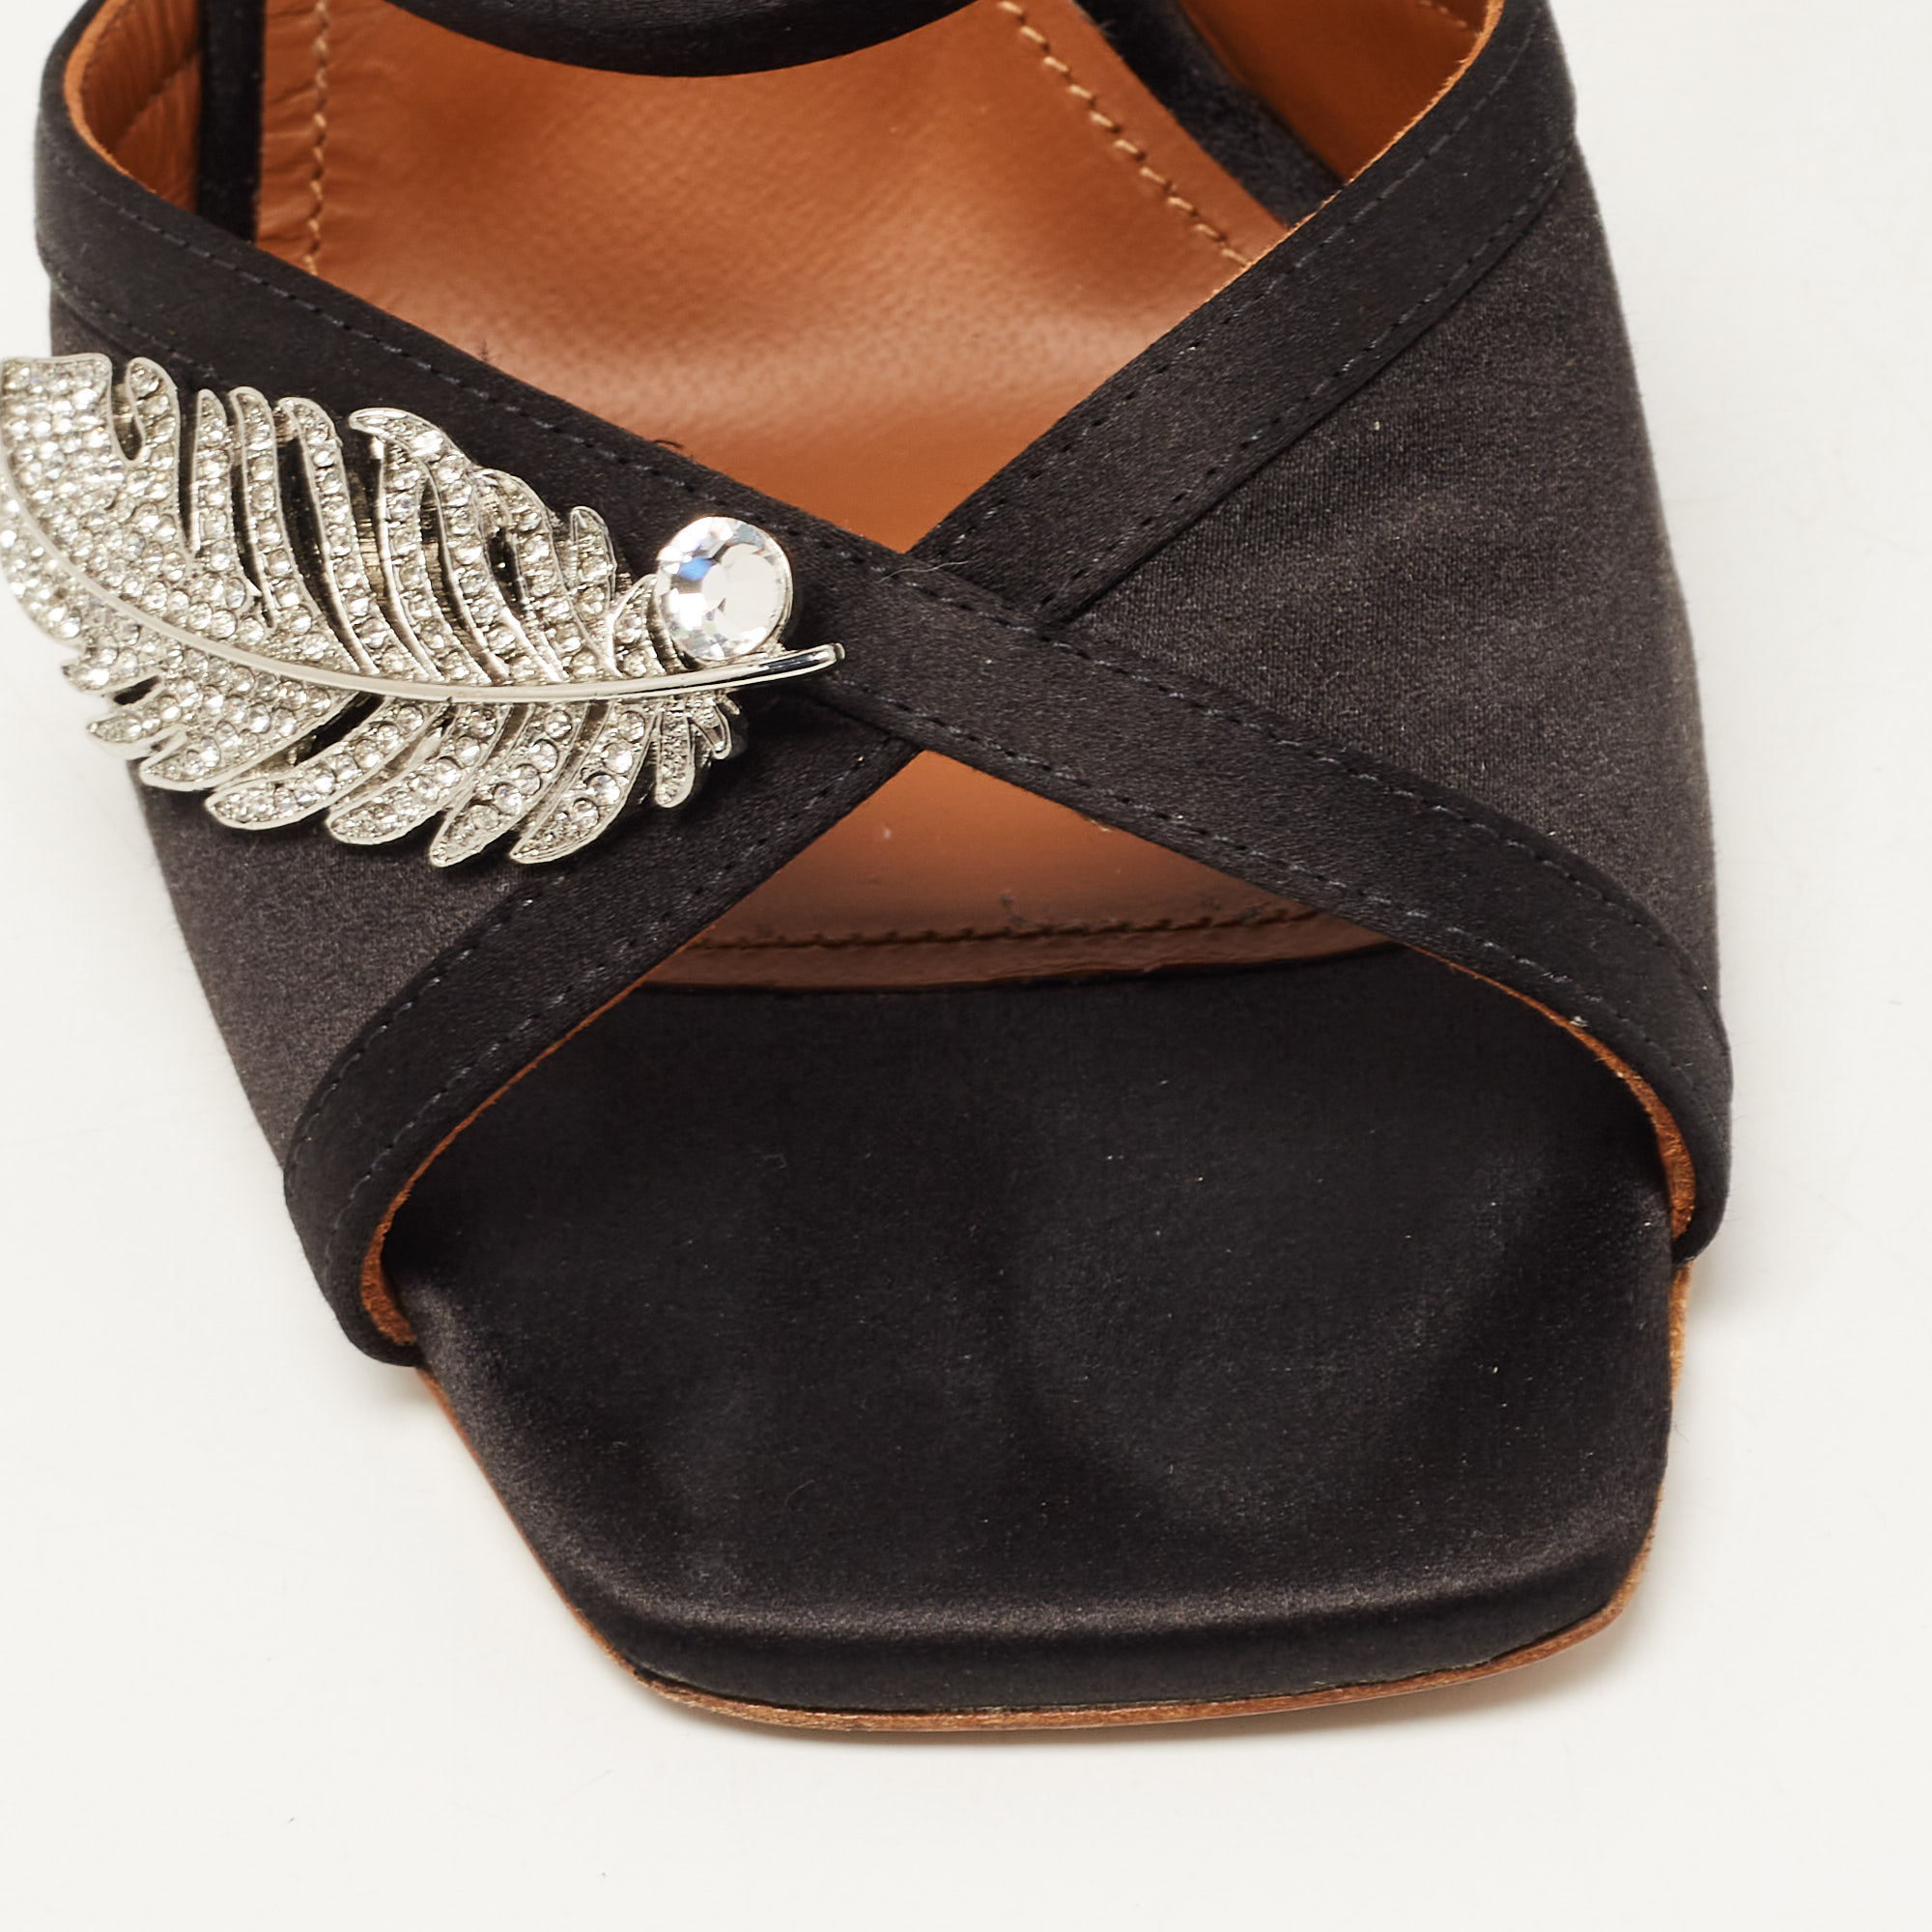 Malone Souliers Black Satin Fion Crystal Embellished Slide Sandals Size 37.5